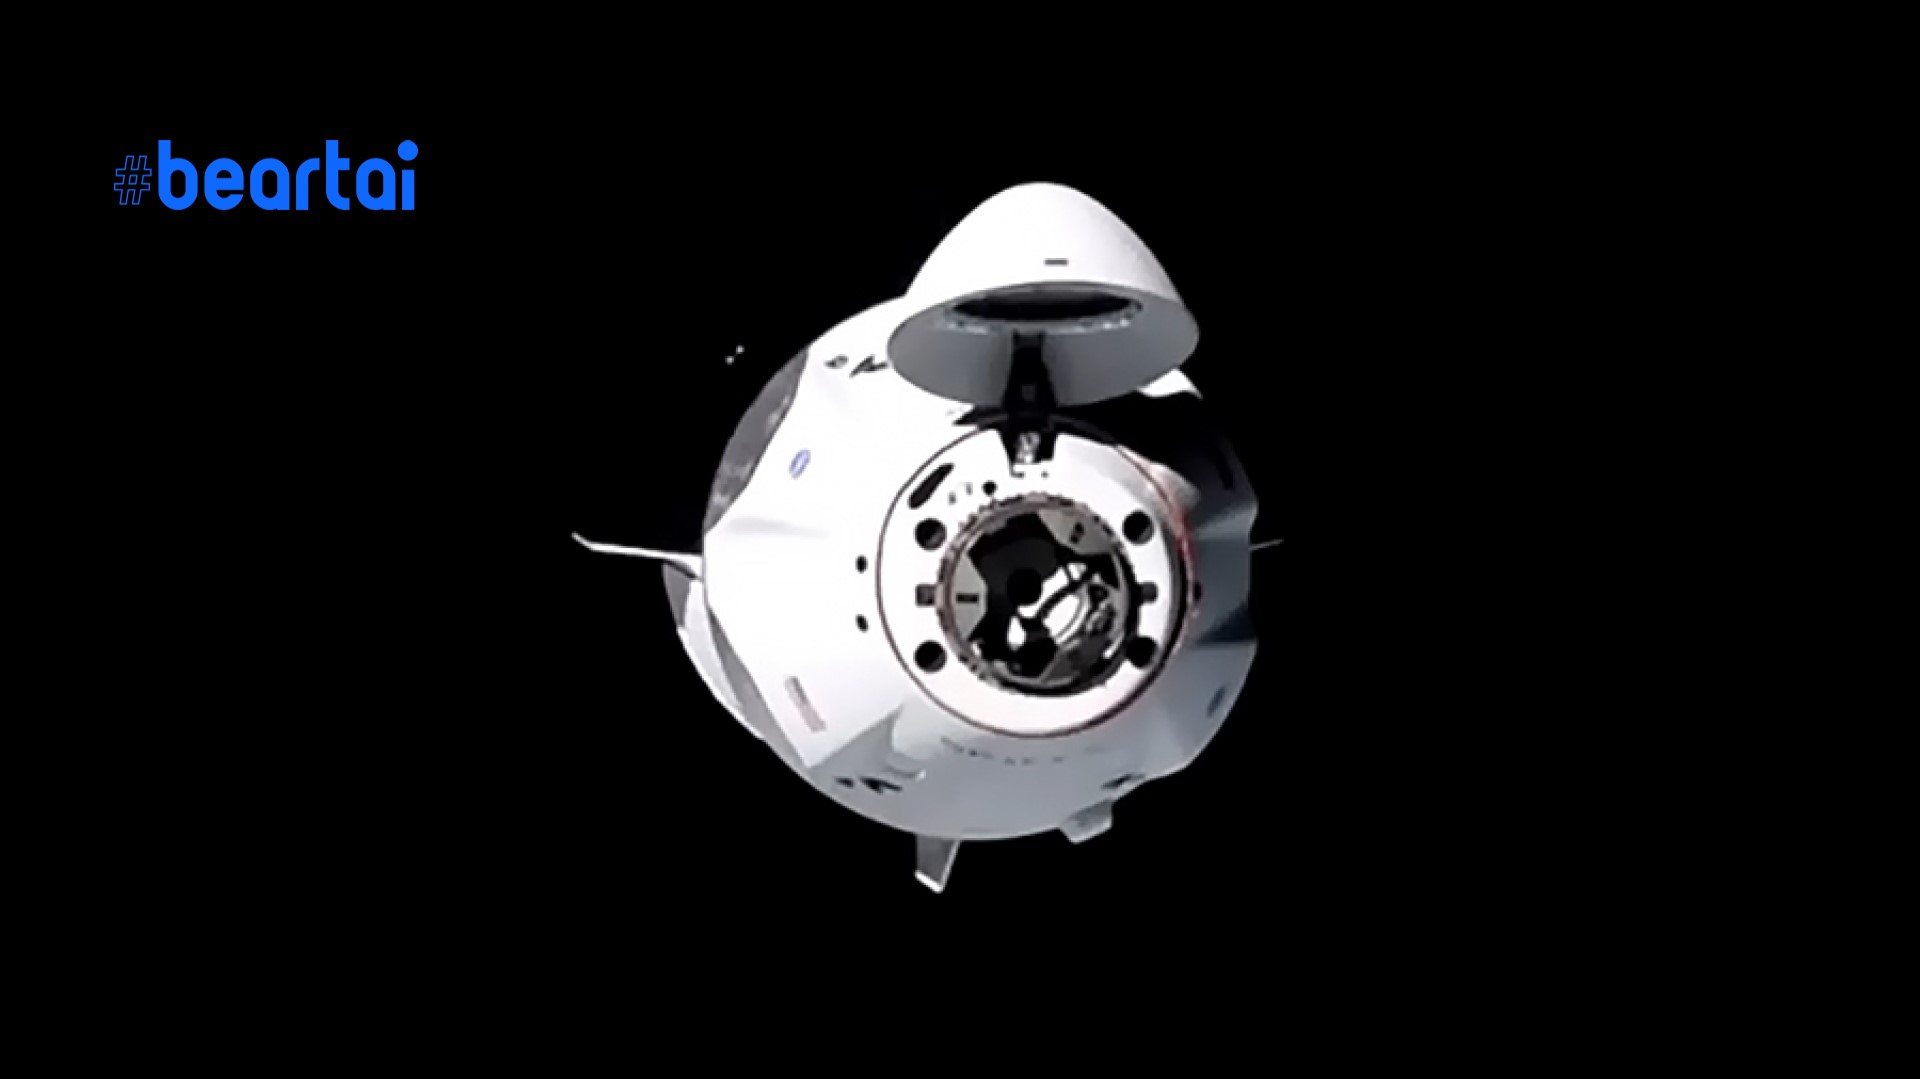 ยานอวกาศ Crew Dragon ในภารกิจ Crew-1 ของ SpaceX และ NASA เทียบท่าสถานีอวกาศได้สำเร็จ